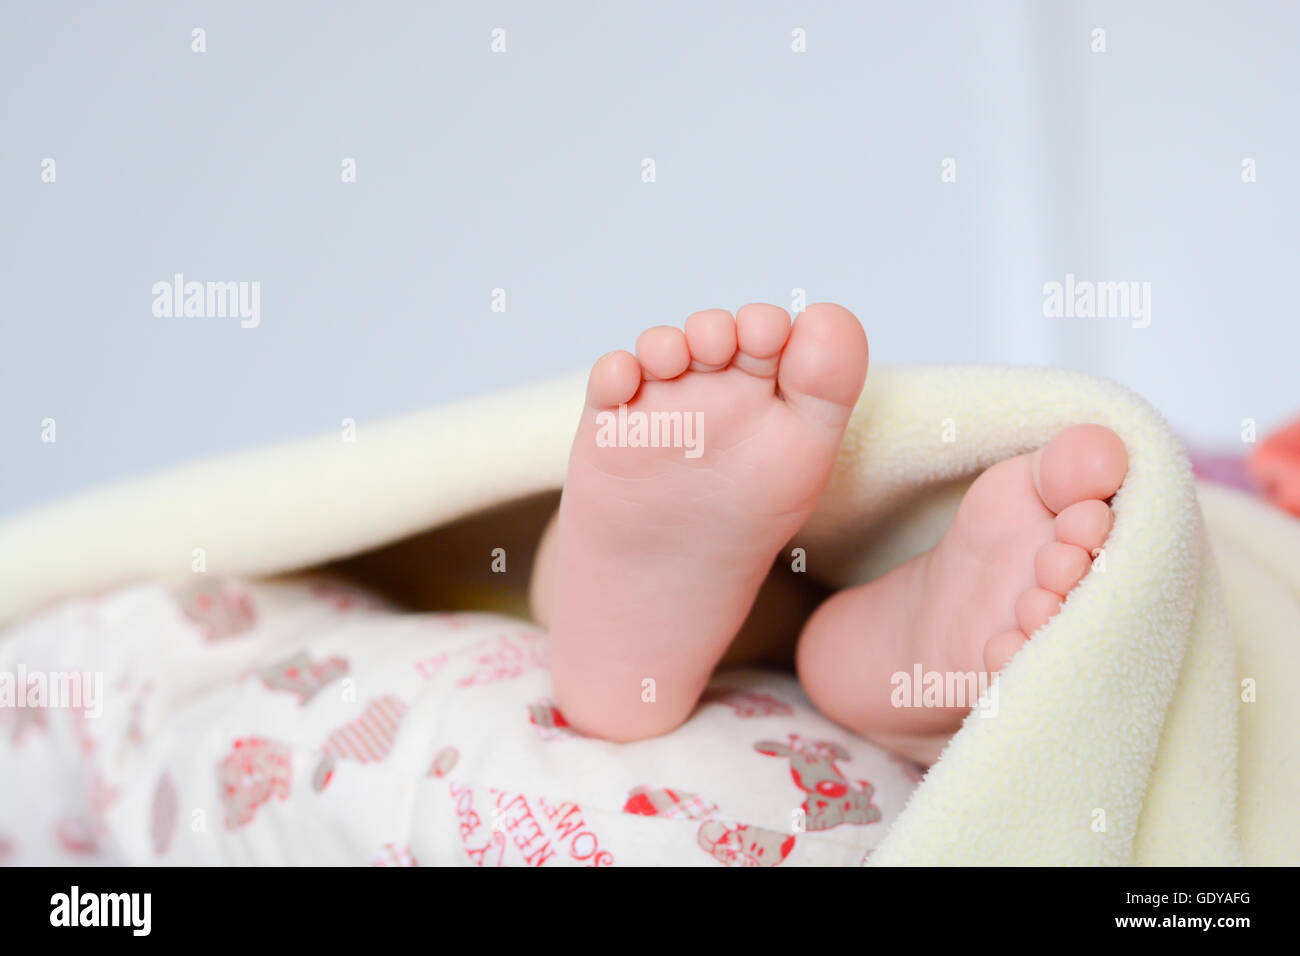 Newborn baby feet under blanket Banque D'Images